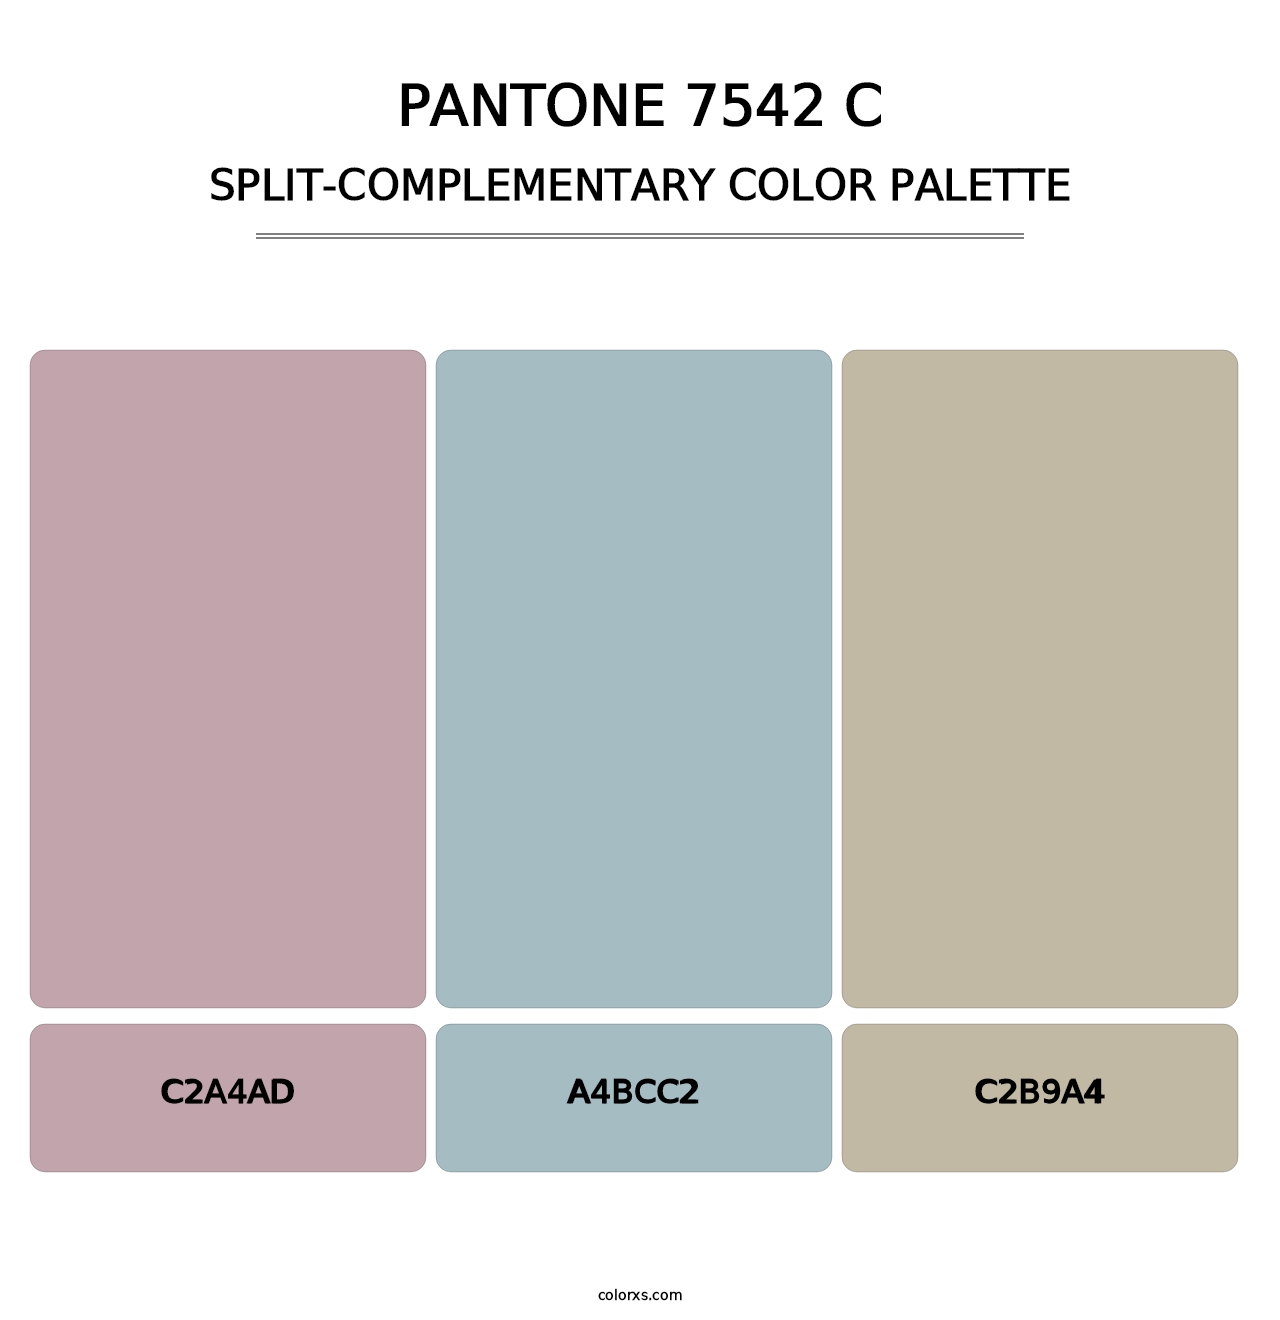 PANTONE 7542 C - Split-Complementary Color Palette